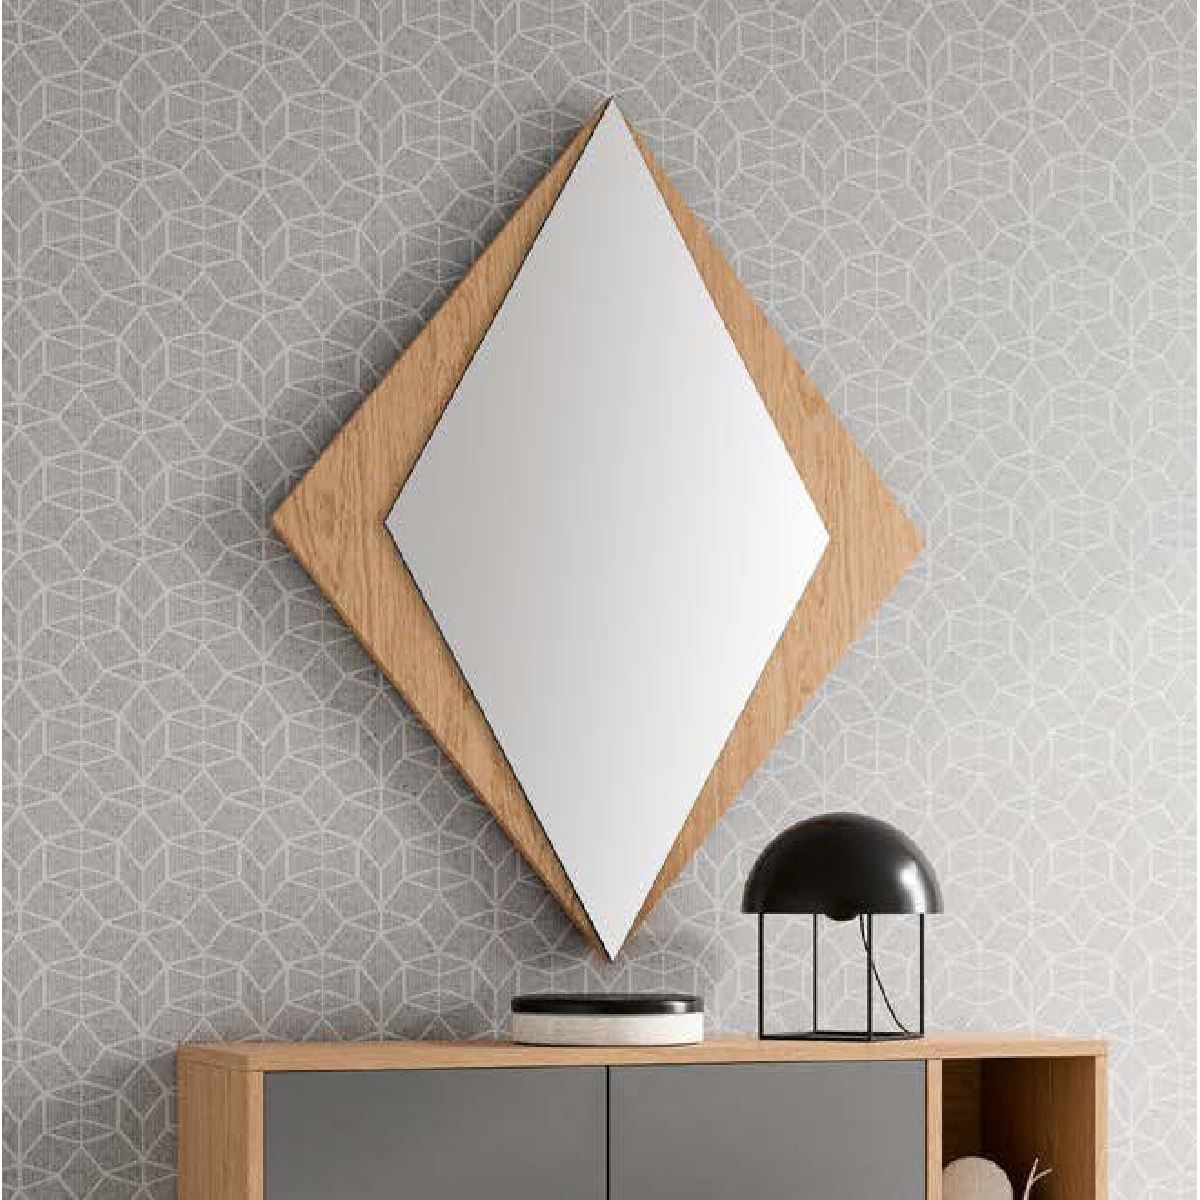 Зеркало с рамой Disemobel Kendra, цвет Nordico, размер 88x2x108 см (4021)4021